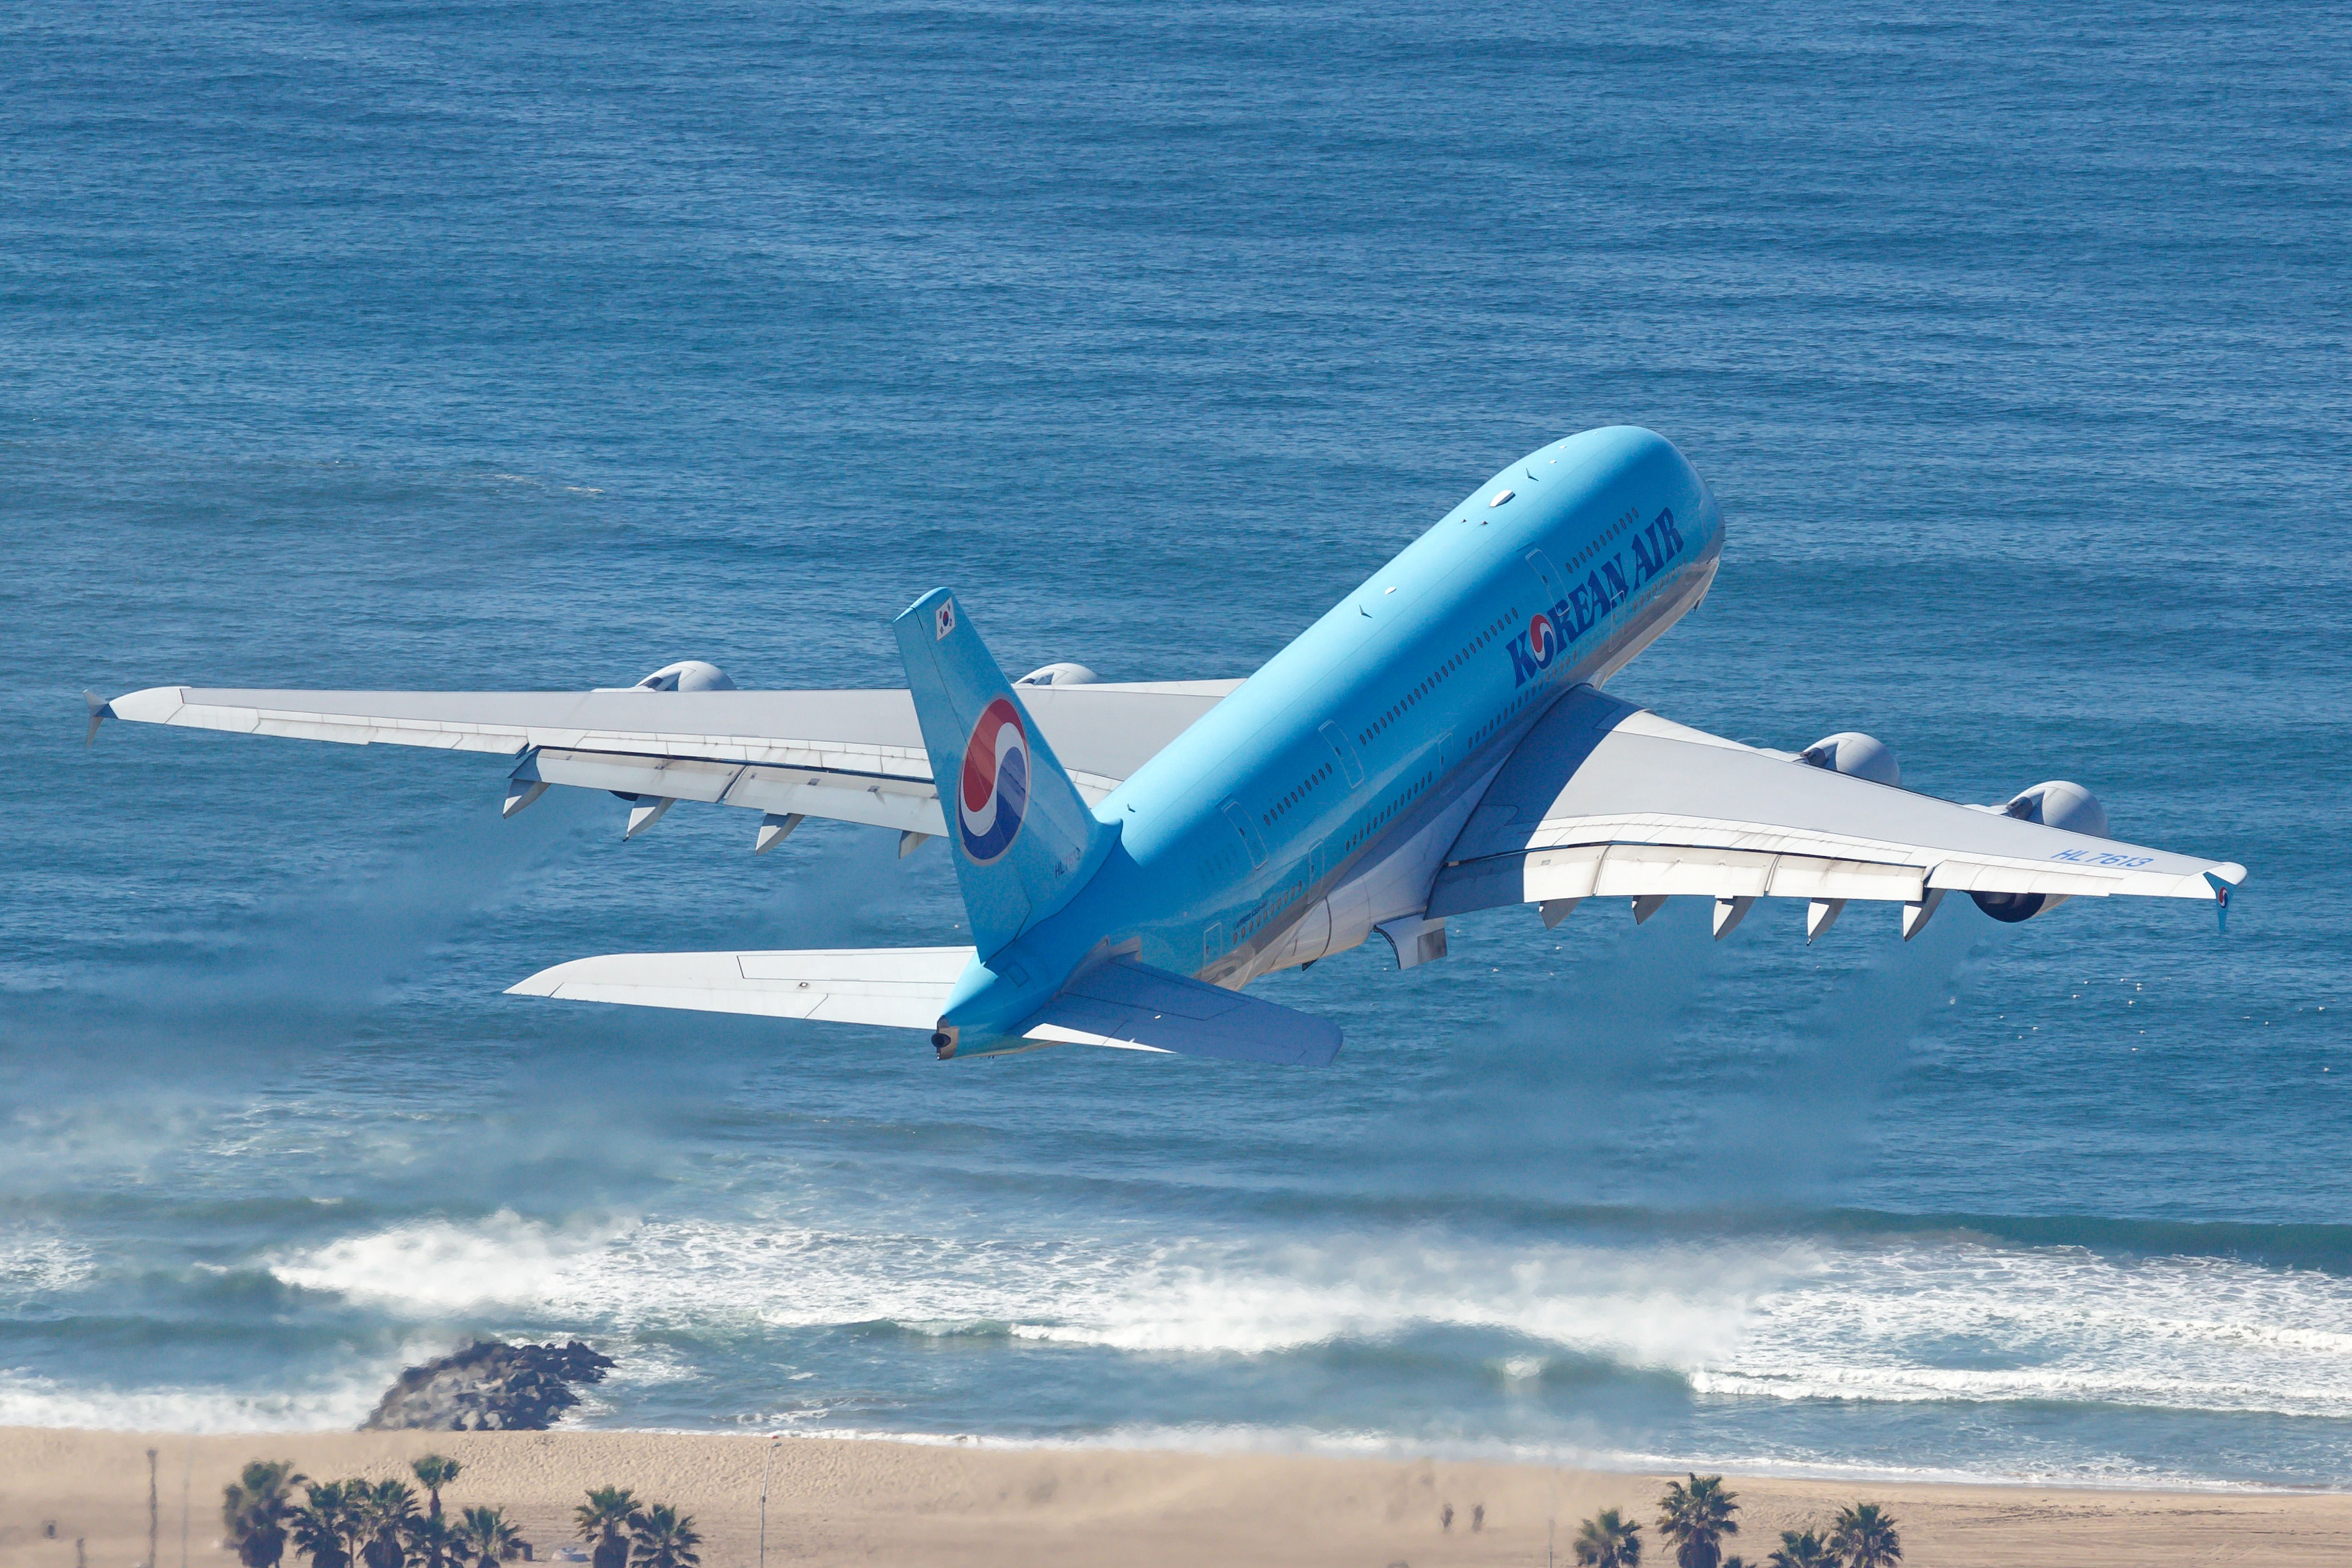 A Korean Air Airbus A380 taking off over a beach.